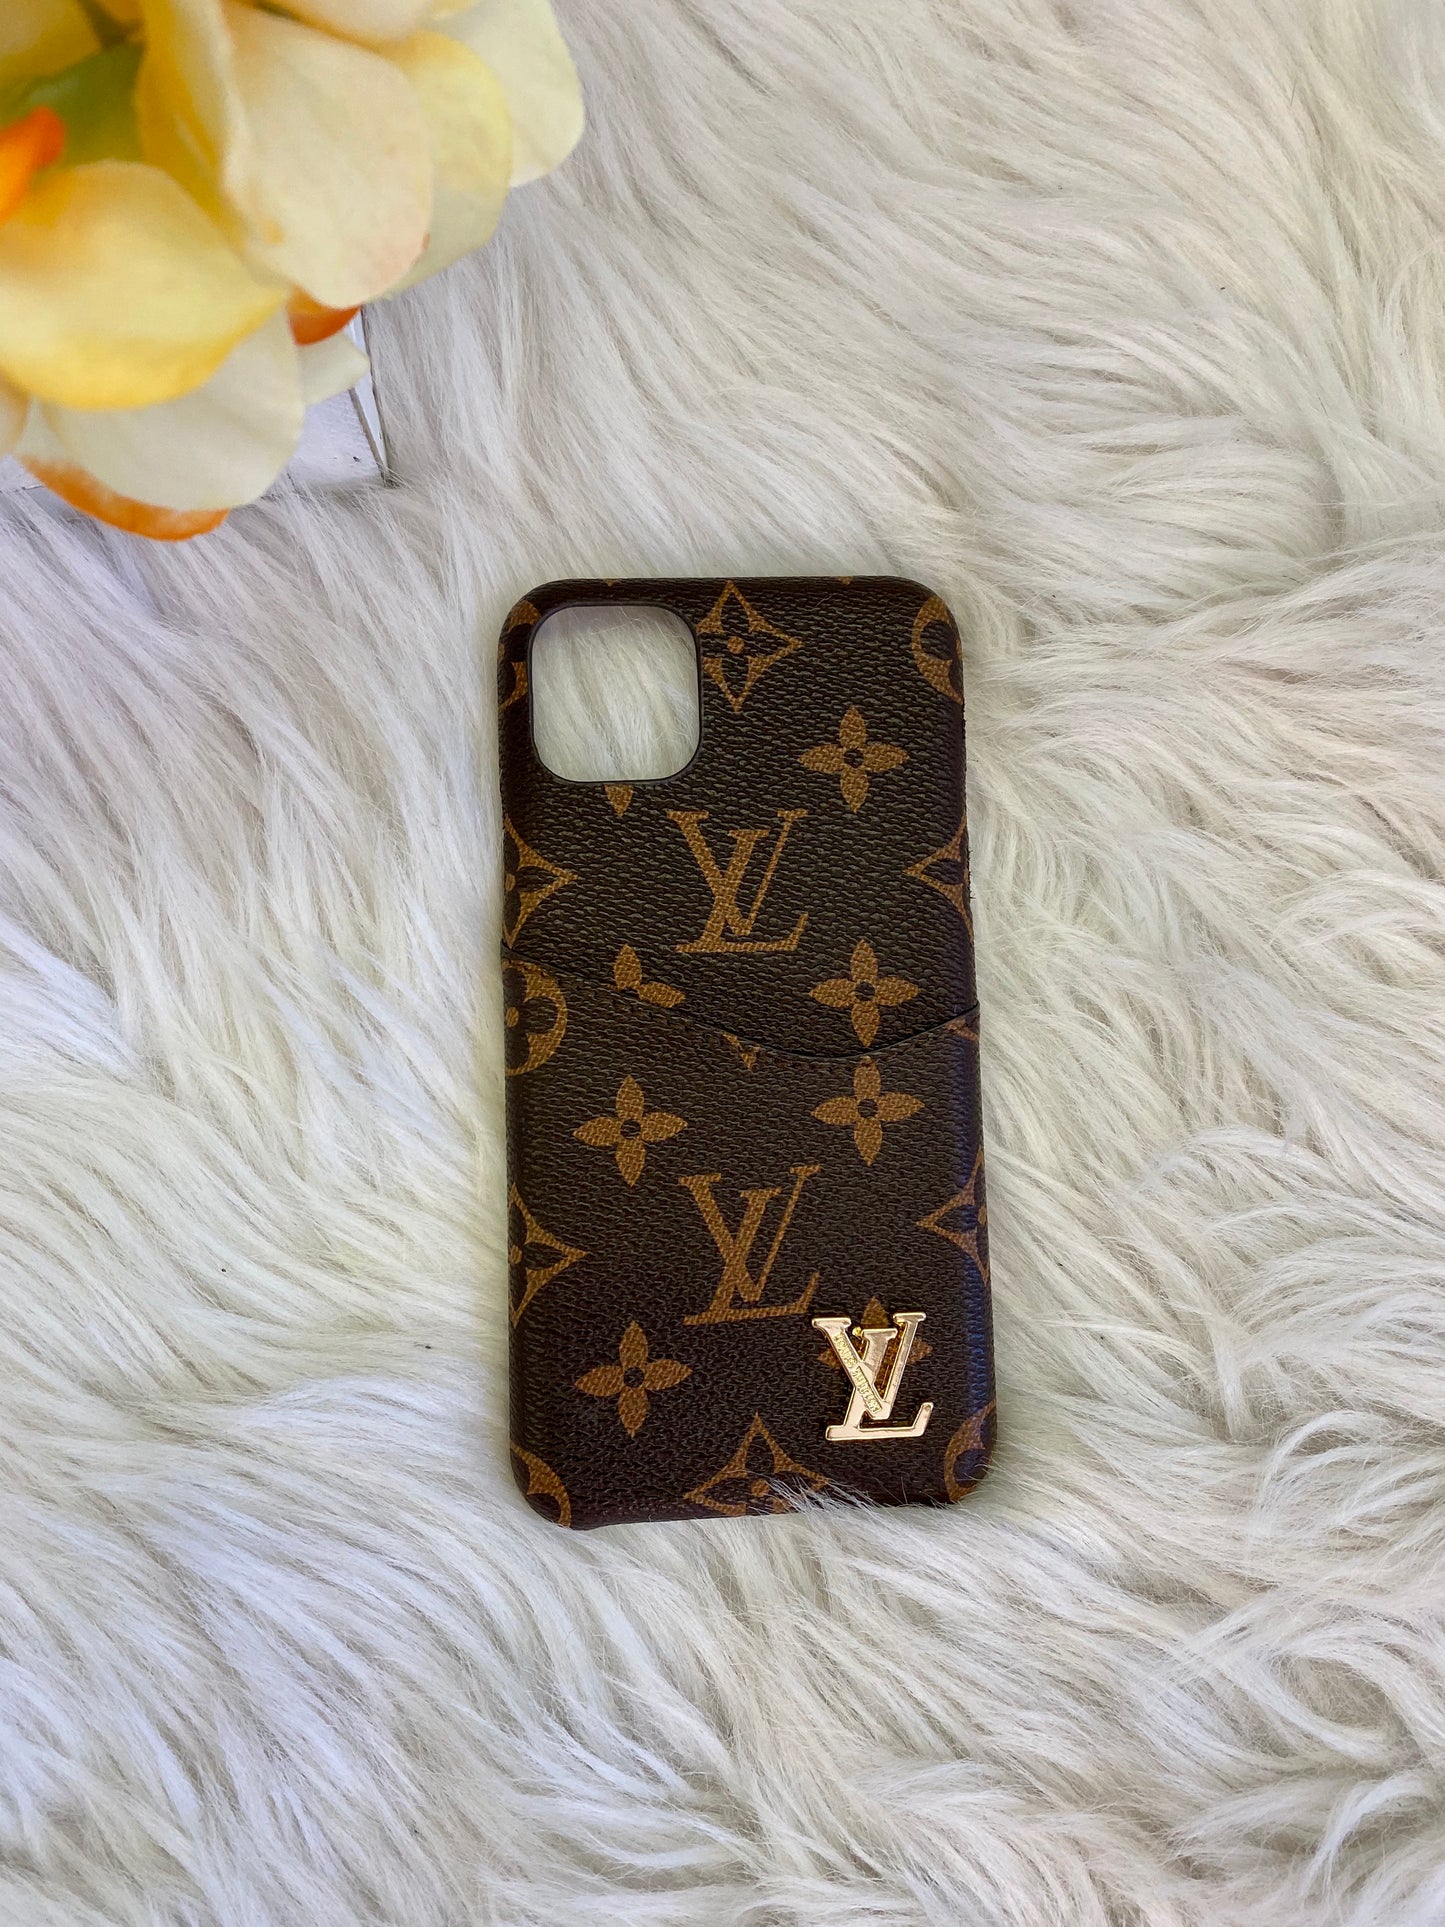 Louis Vuitton iPhone 11 Case 